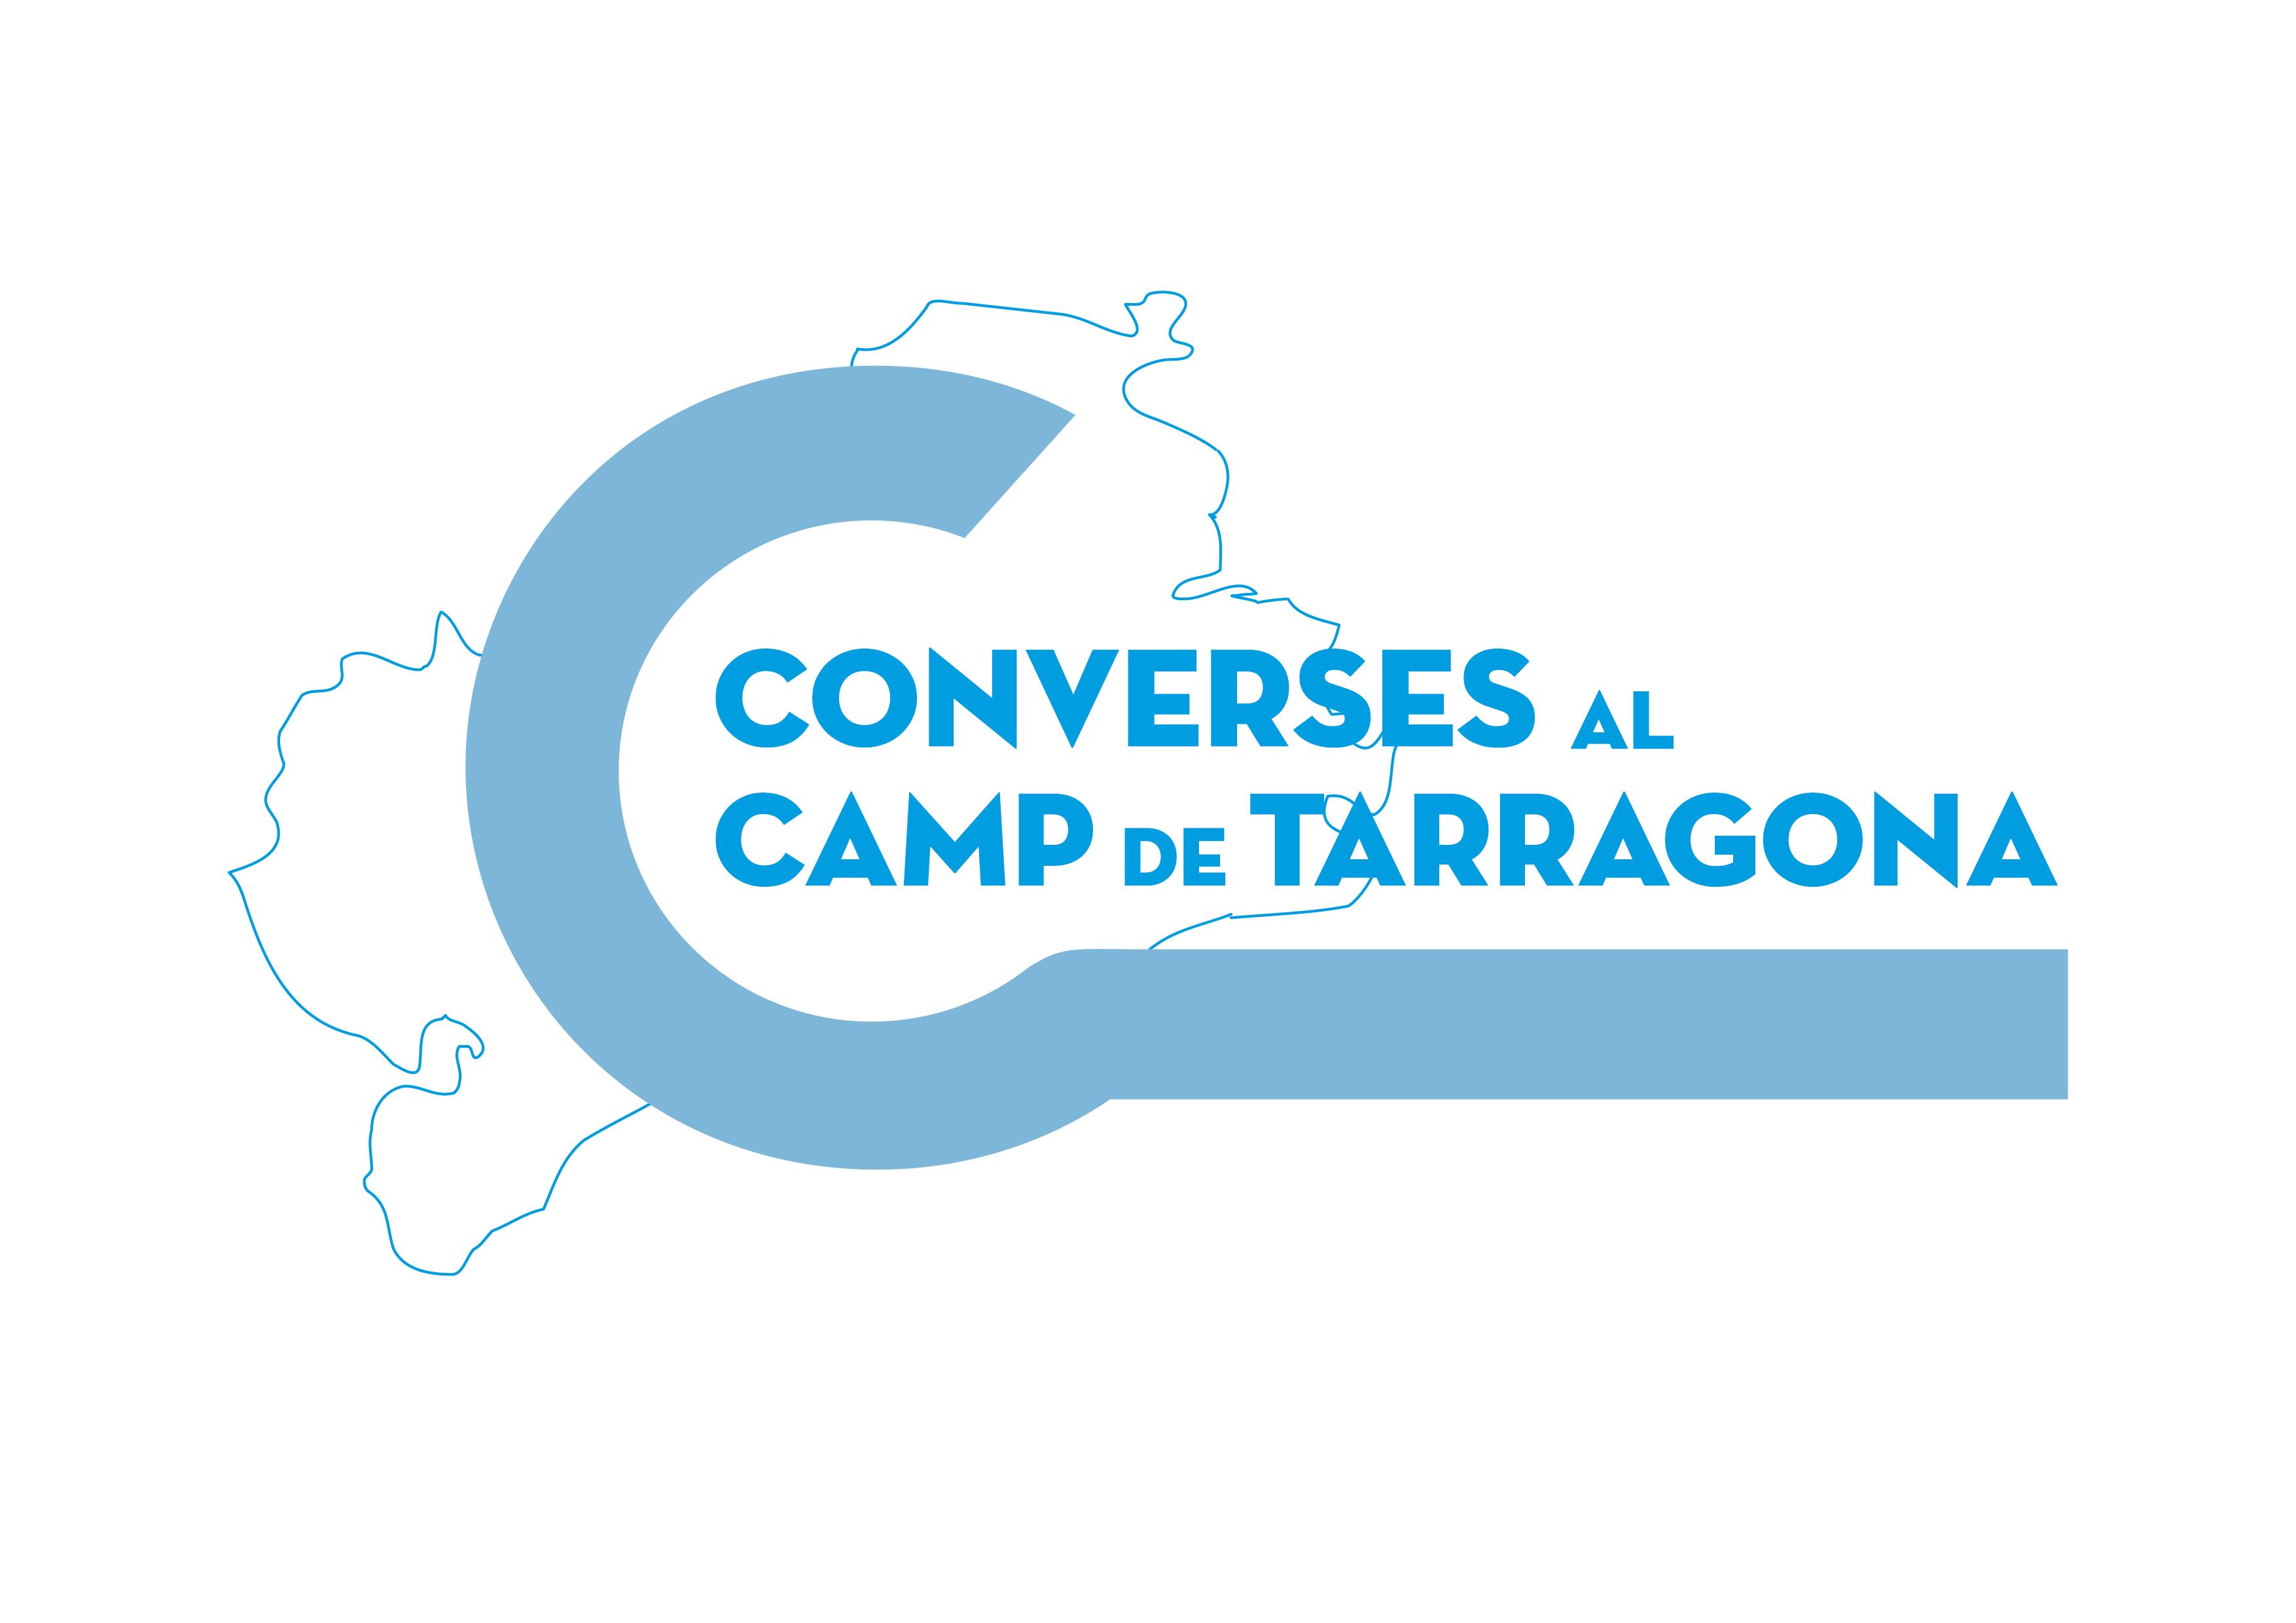 Converses al Camp de Tarragona